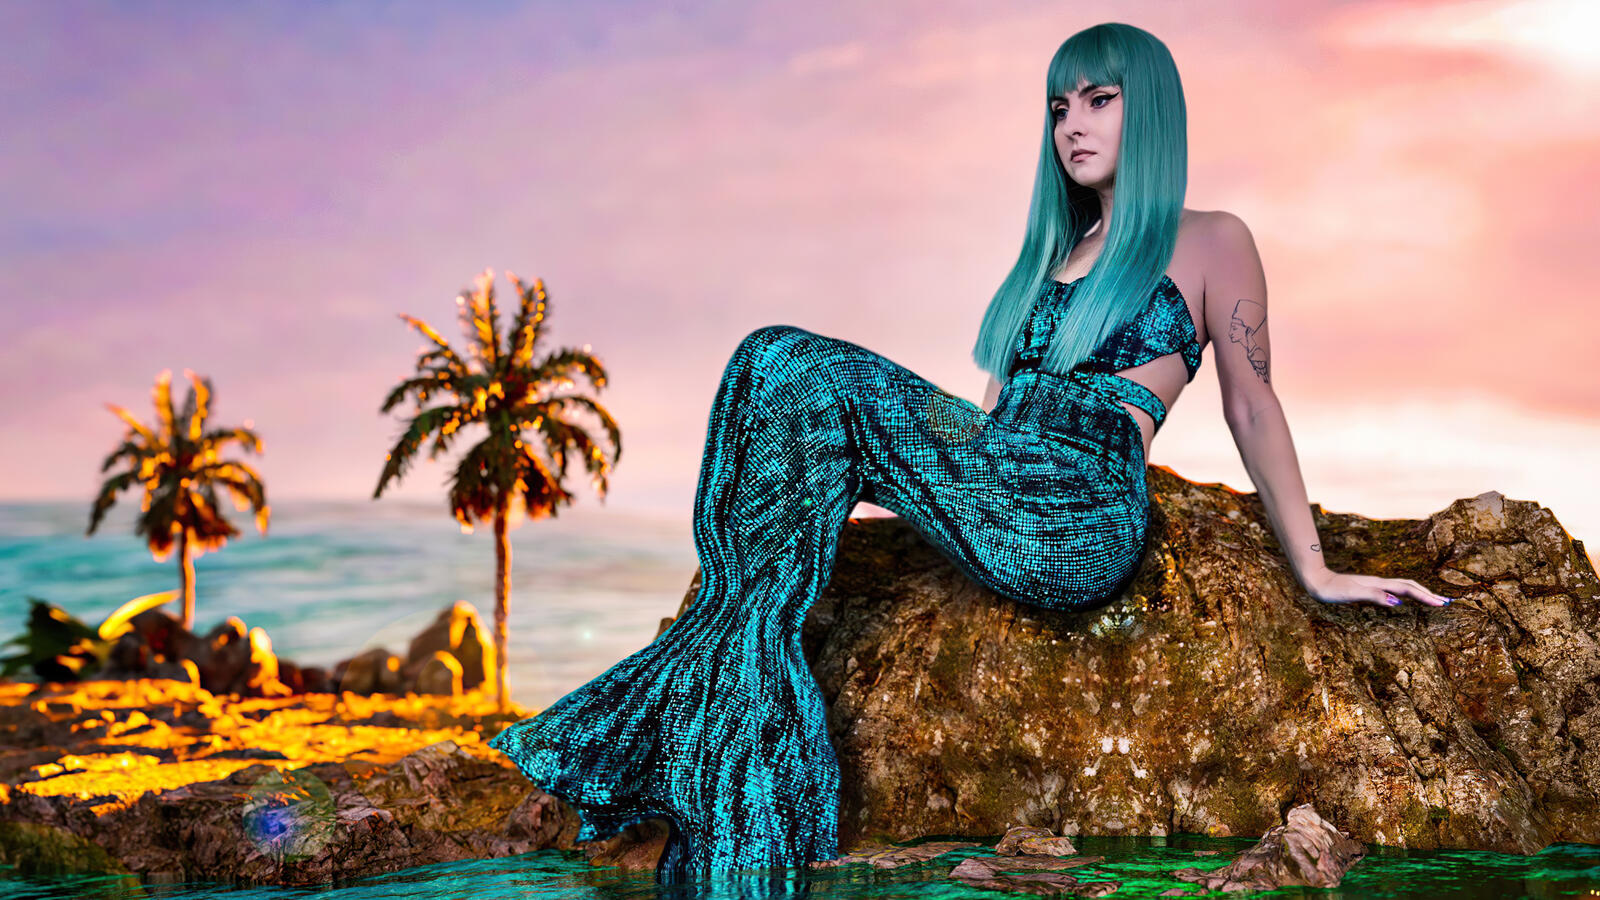 免费照片一个蓝色头发的美人鱼女孩坐在岩石上